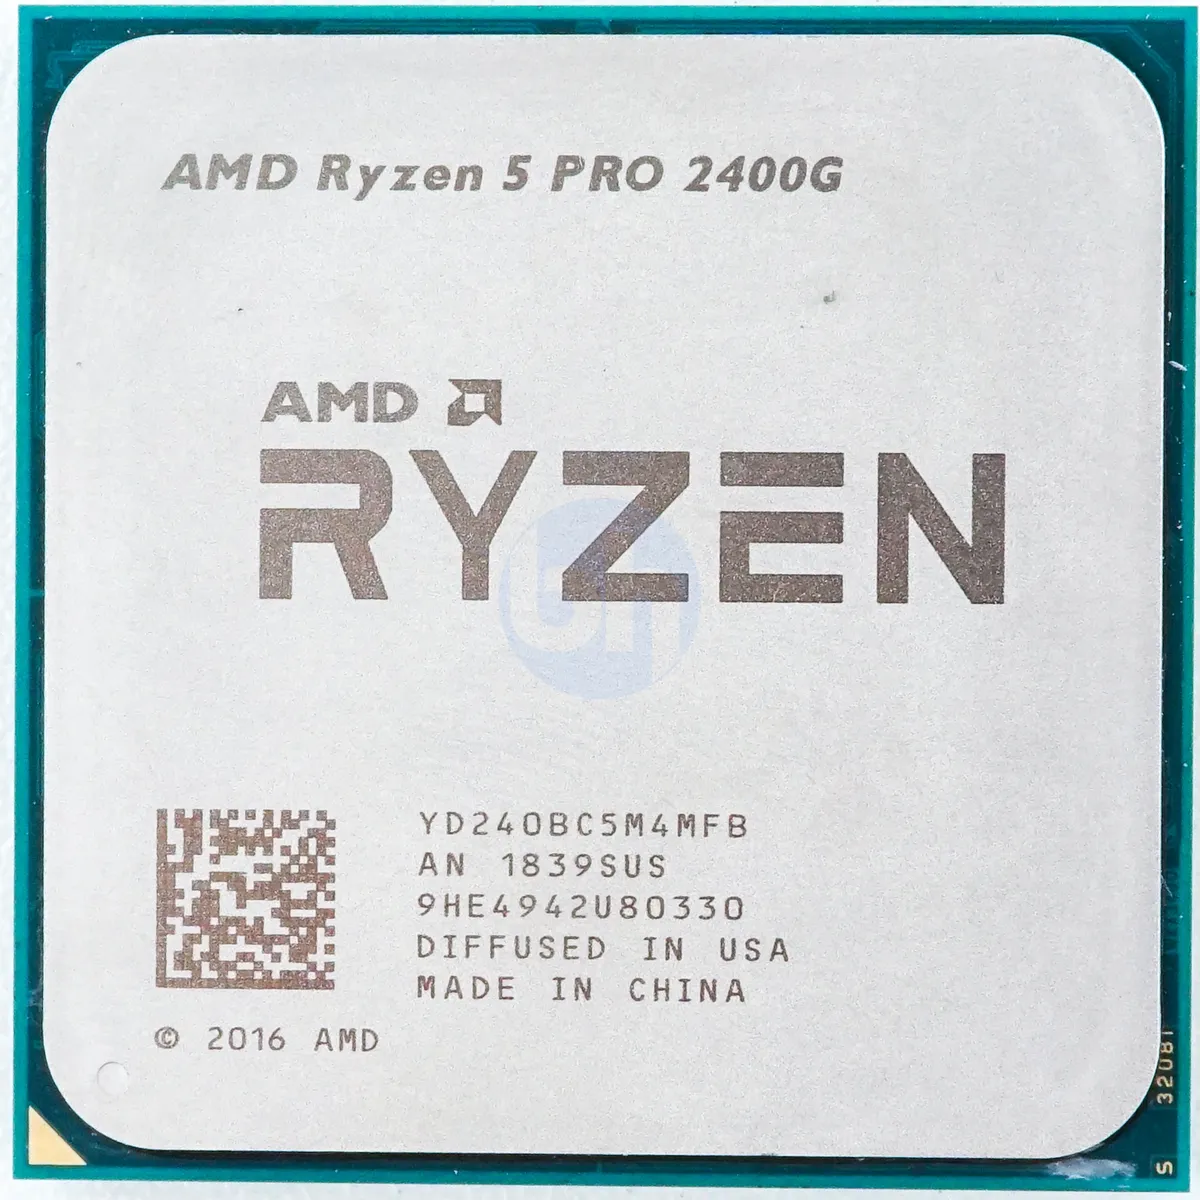 AMD Ryzen 5 PRO 2400G (YD240BC5M4MFB) - 4-Core 3.60GHz AM4 4MB 64W CPU